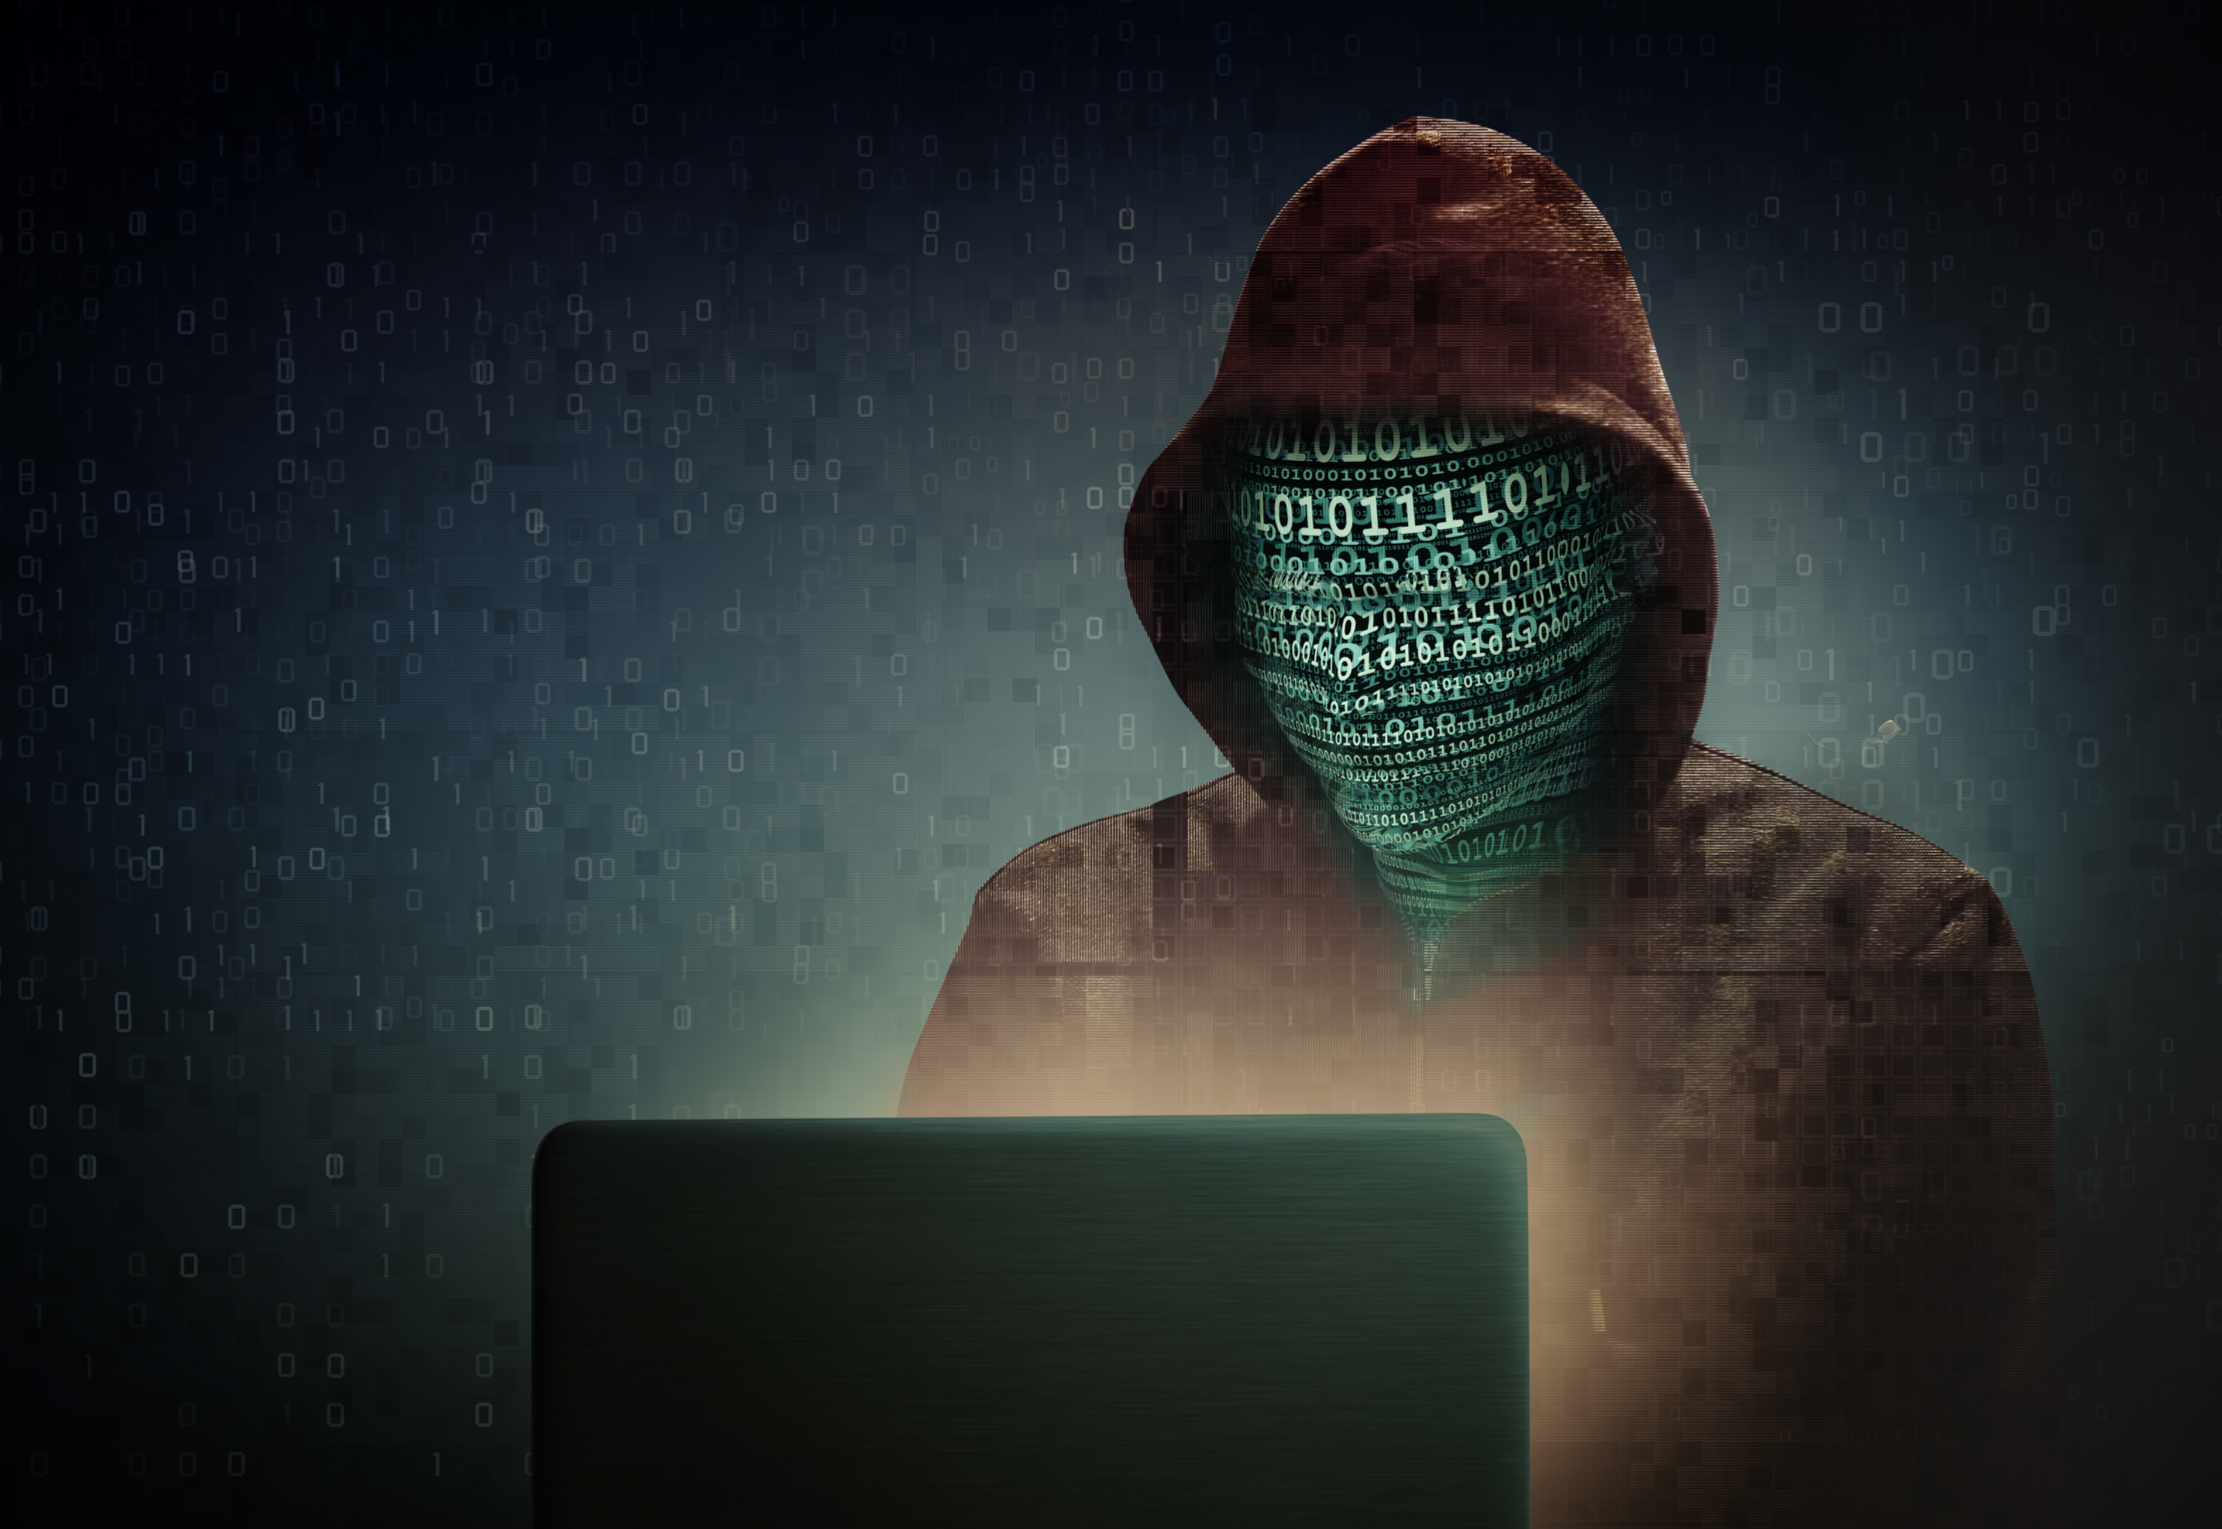 BOOLE – “La cybersecurity non sarà più come prima!”